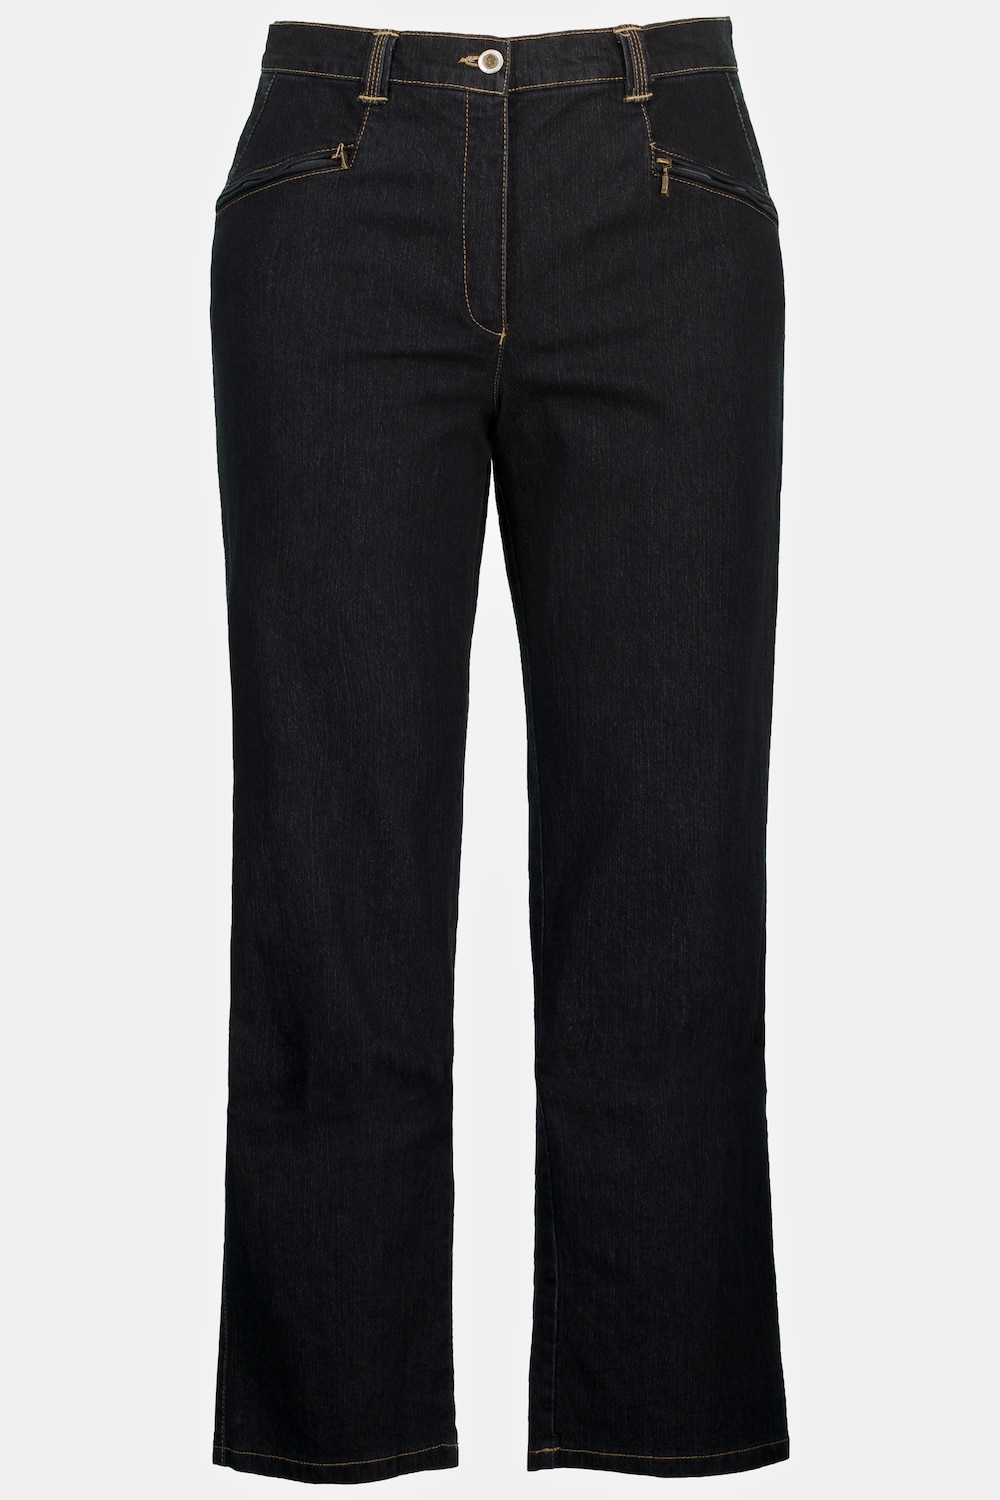 Grote Maten jeans Mony, Dames, zwart, Maat: 52, Katoen/Polyester, Ulla Popken